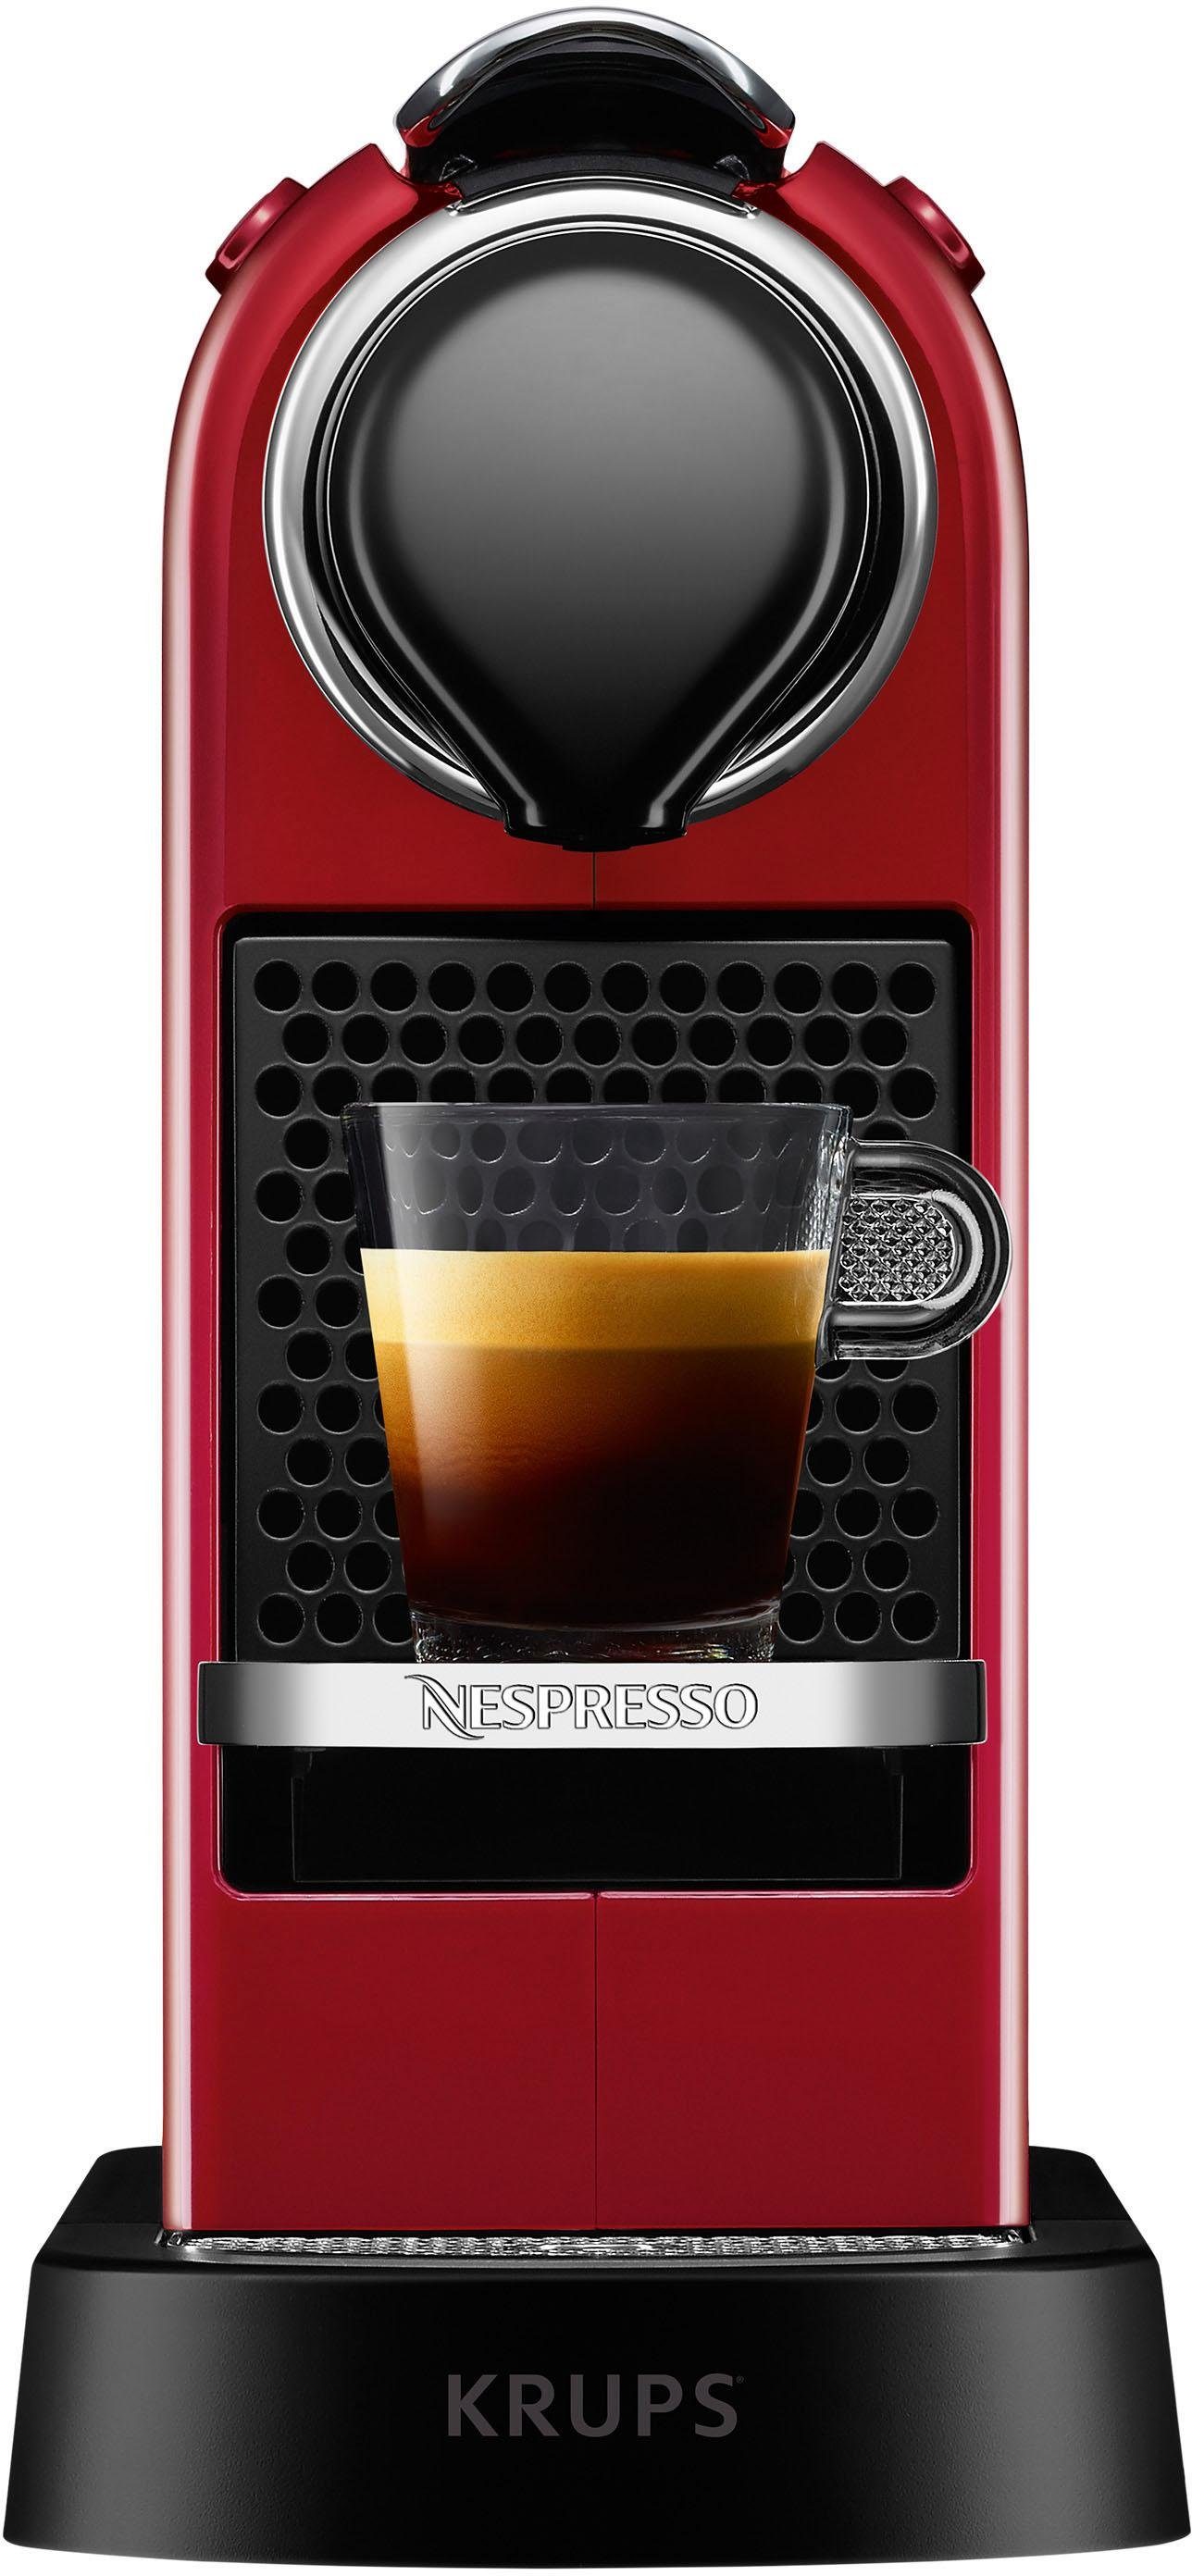 Nespresso Kapselmaschine Wassertank: Krups, mit CitiZ 1 inkl. New XN7415 Willkommenspaket von L, 14 Kapseln